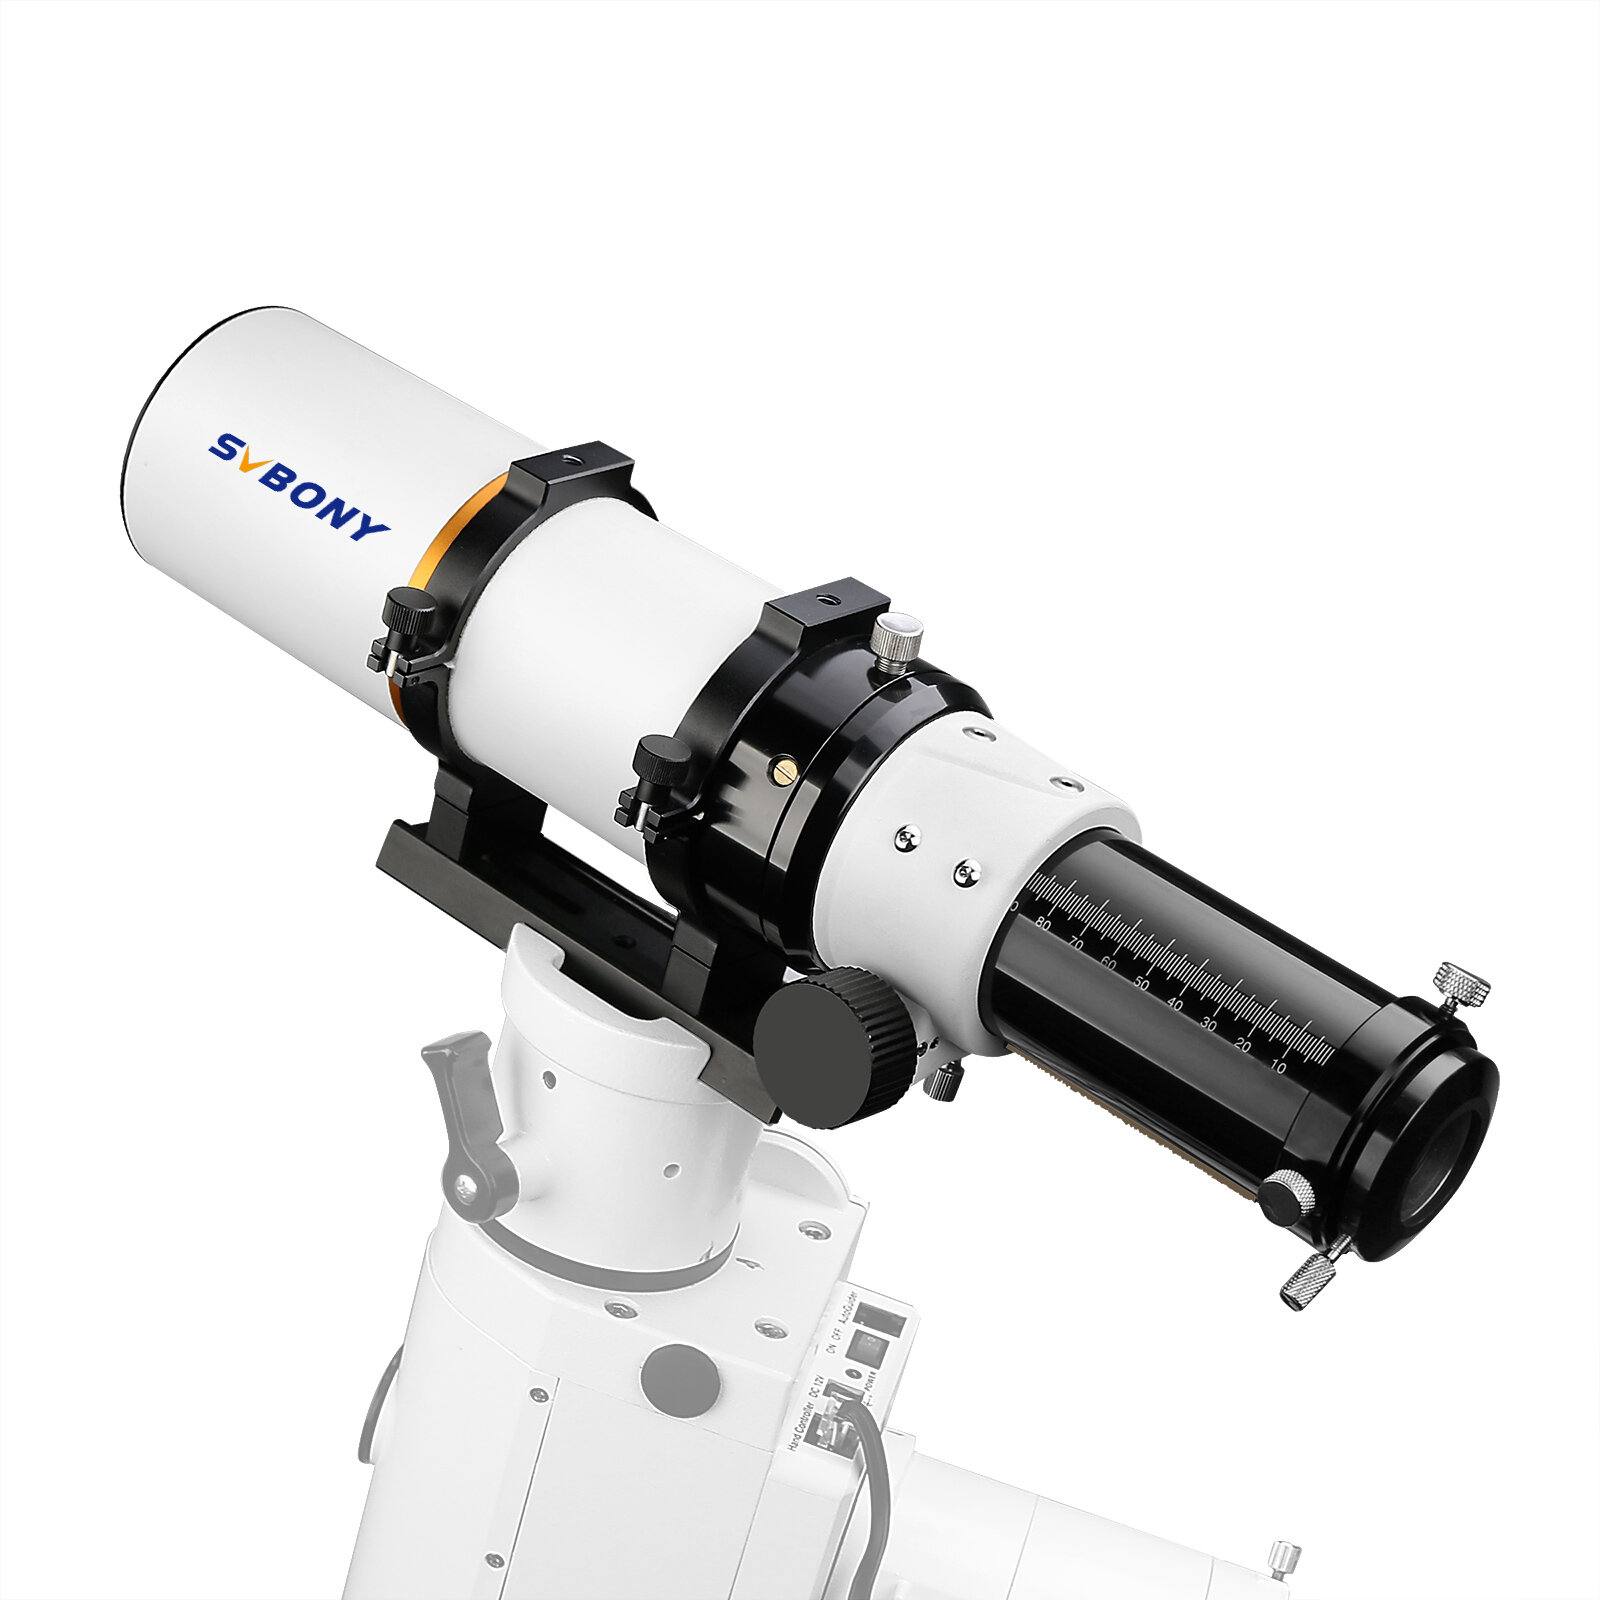 Teleskop astronomi refraktor SVBONY F9359A White70/420 F6 (OTA) dengan cermin utama aluminium dan lensa ED untuk fotografi di luar ruangan dan berkemah.